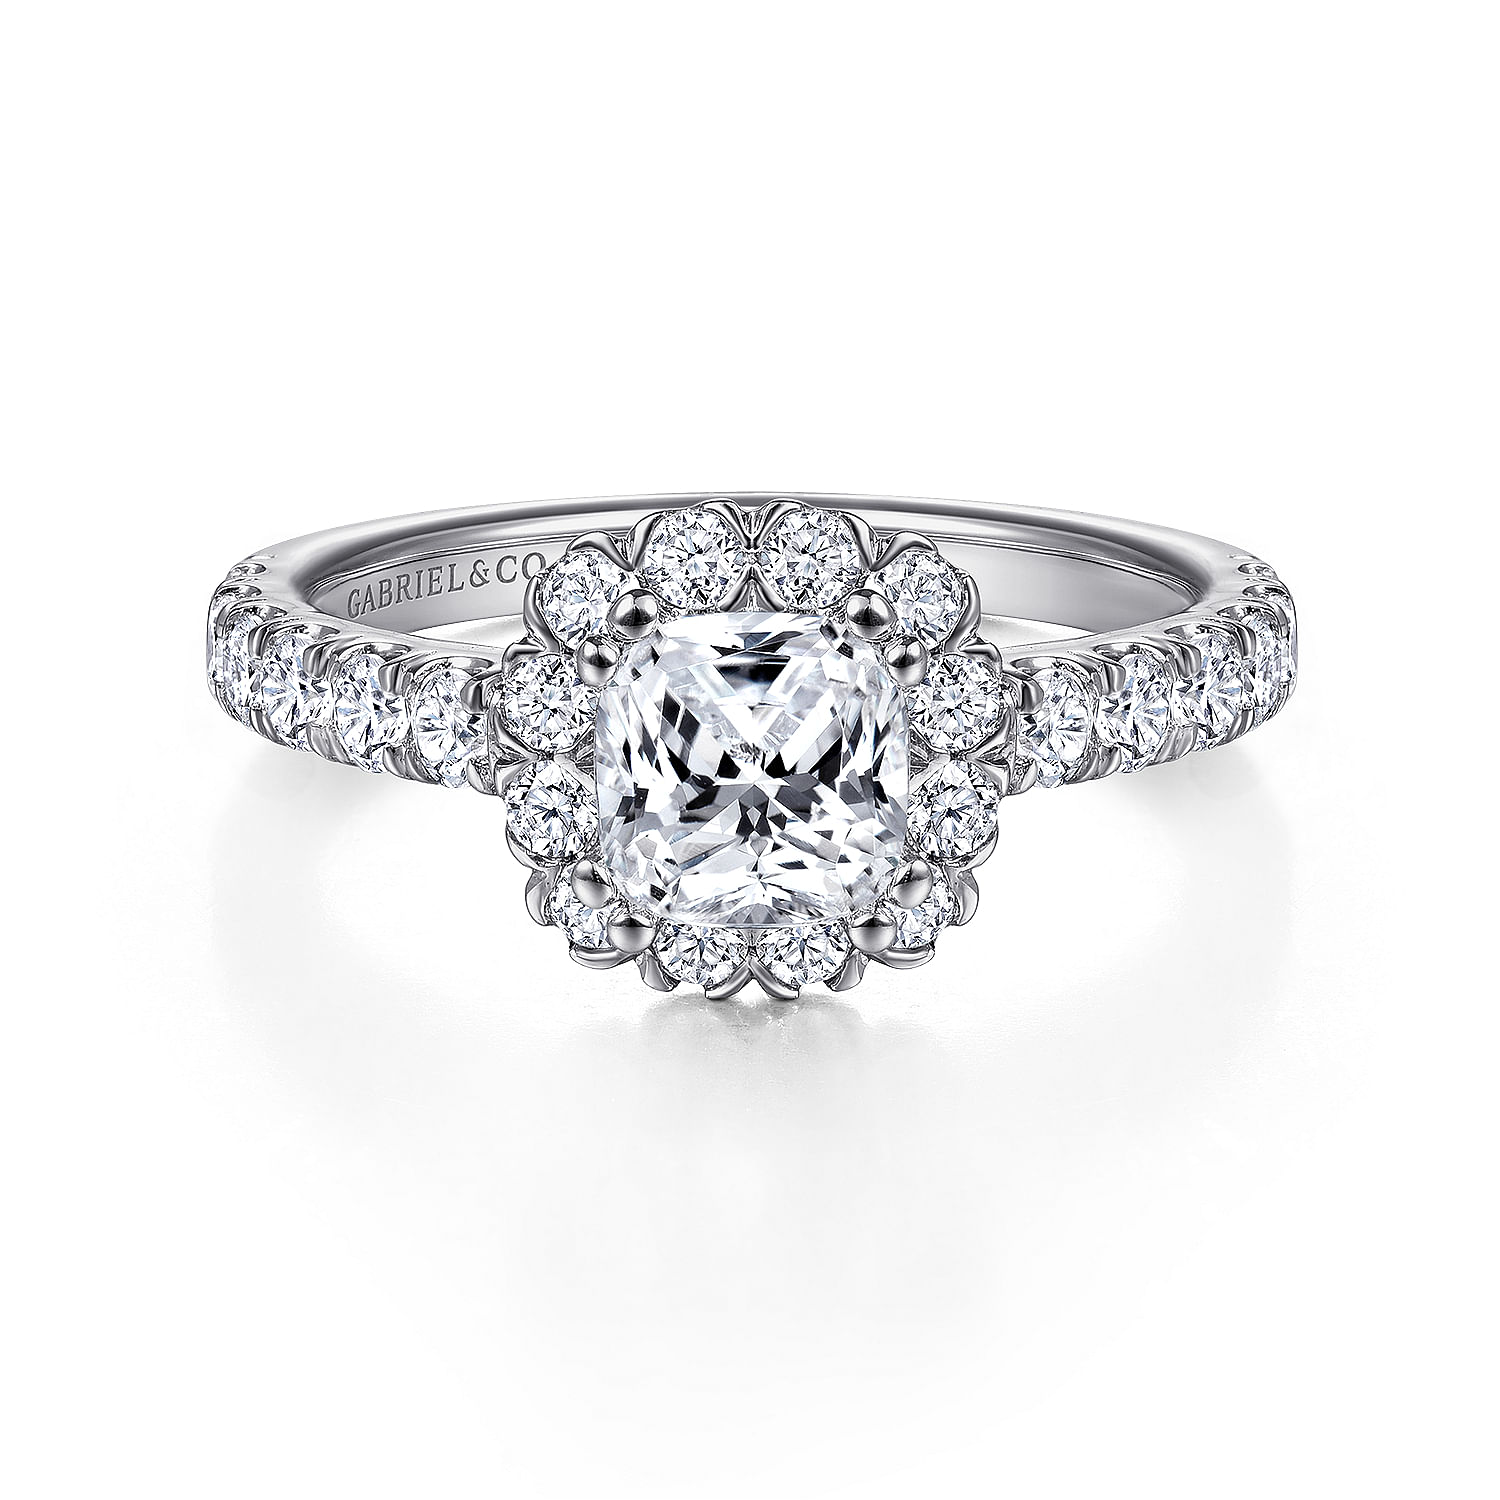 Rosalyn---14K-White-Gold-Cushion-Halo-Diamond-Engagement-Ring1